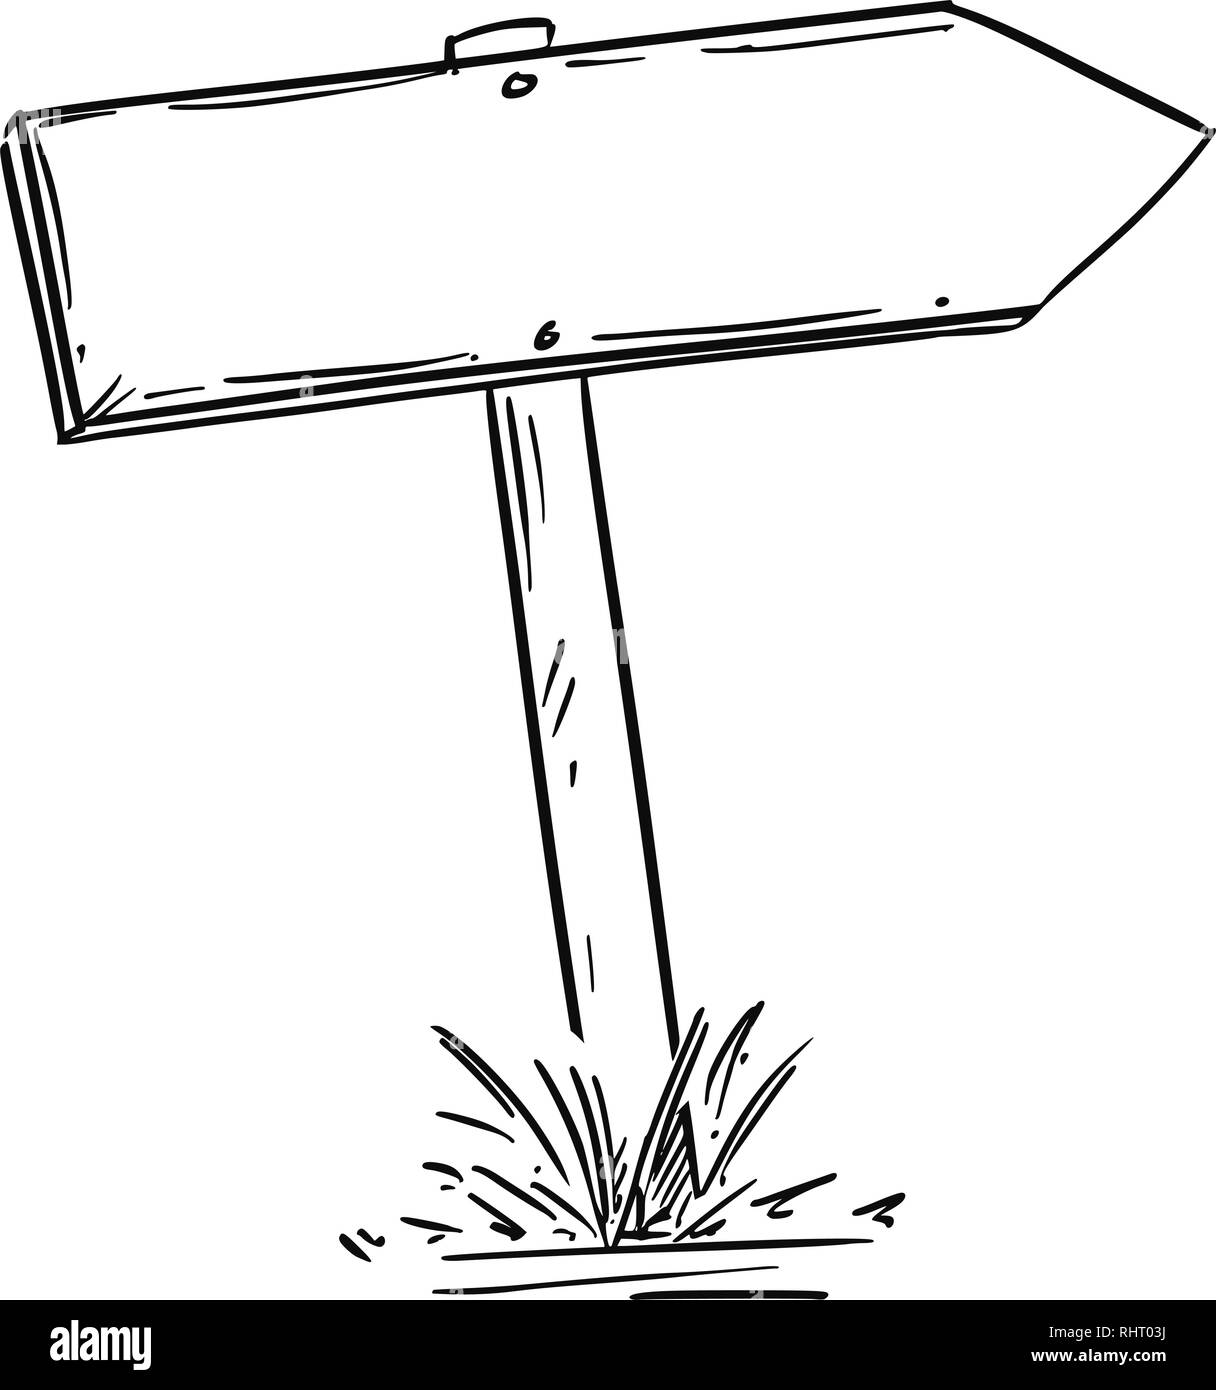 Dibujo de vacío de madera antigua carretera Señal de flecha Ilustración del Vector